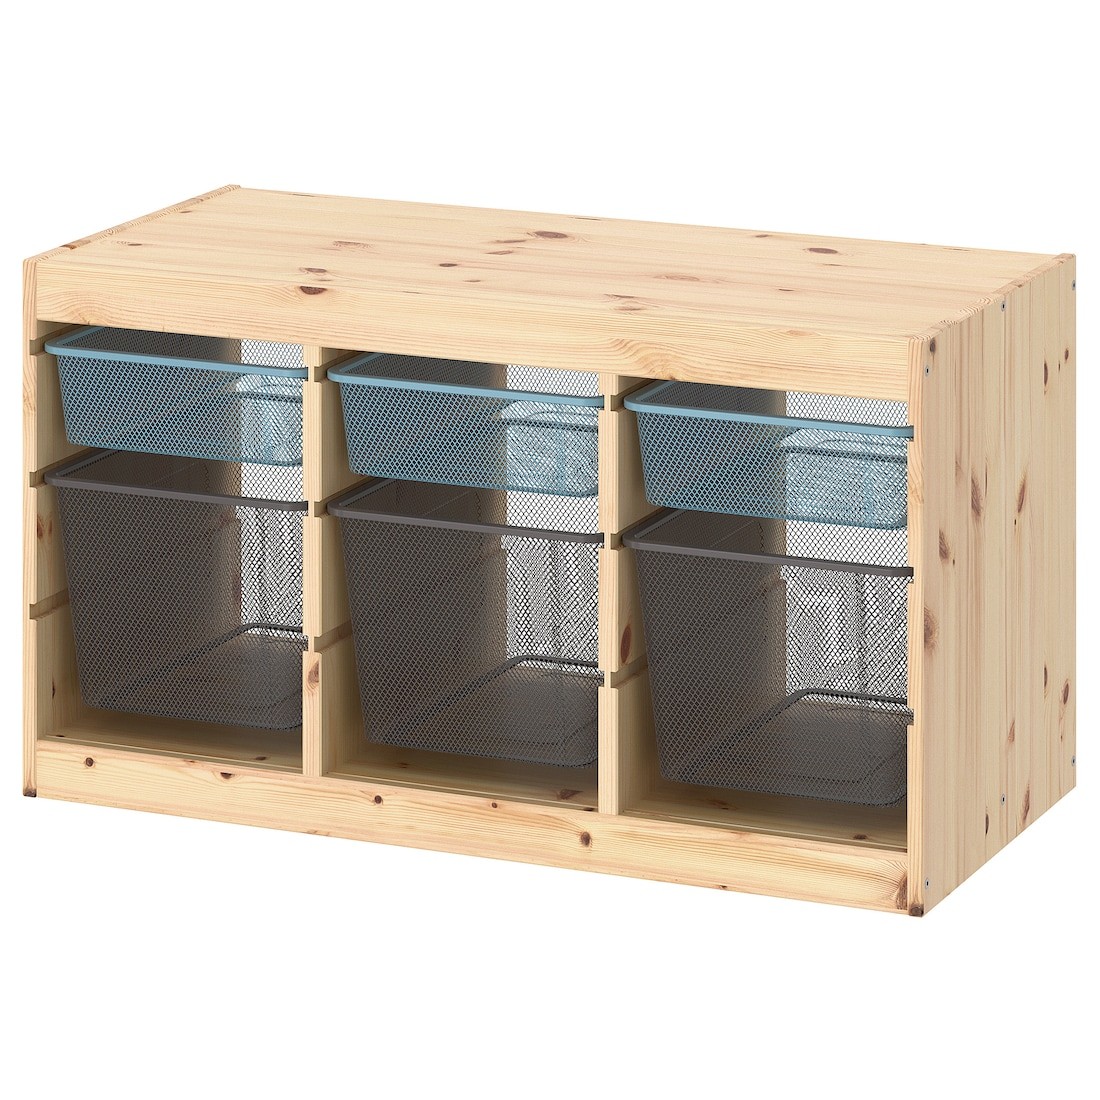 TROFAST Комбинация для хранения + контейнеры, светлая беленая сосна серо-голубой / темно-серый, 93x44x52 см